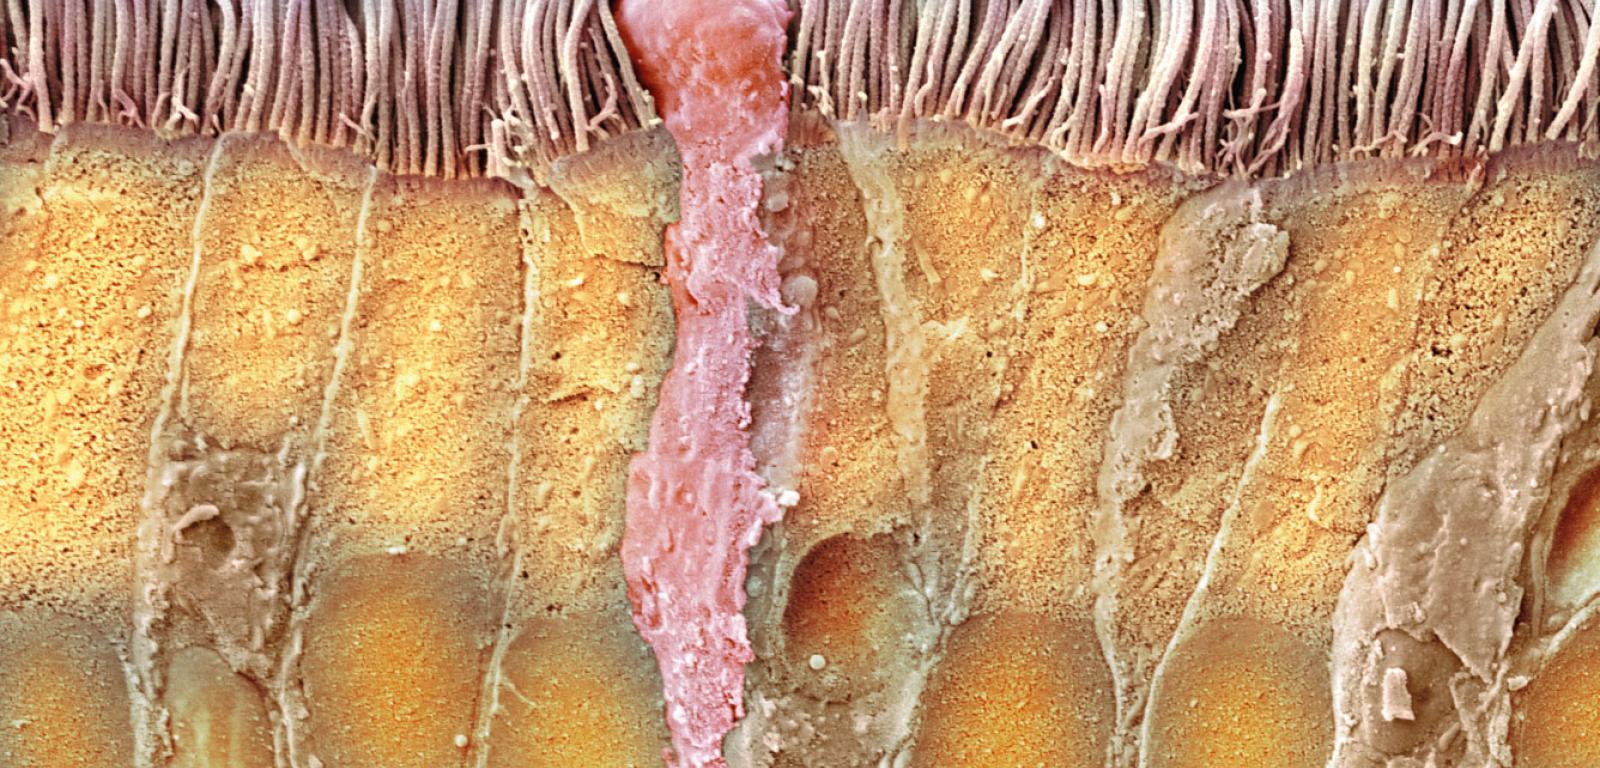 Przekrój przez ścianę tchawicy. Widać wydzielającą śluz komórkę (różowa) oraz rzęski oczyszczające i ogrzewające wdychane powietrze. Zdjęcie z elektronowego mikroskopu skaningowego.